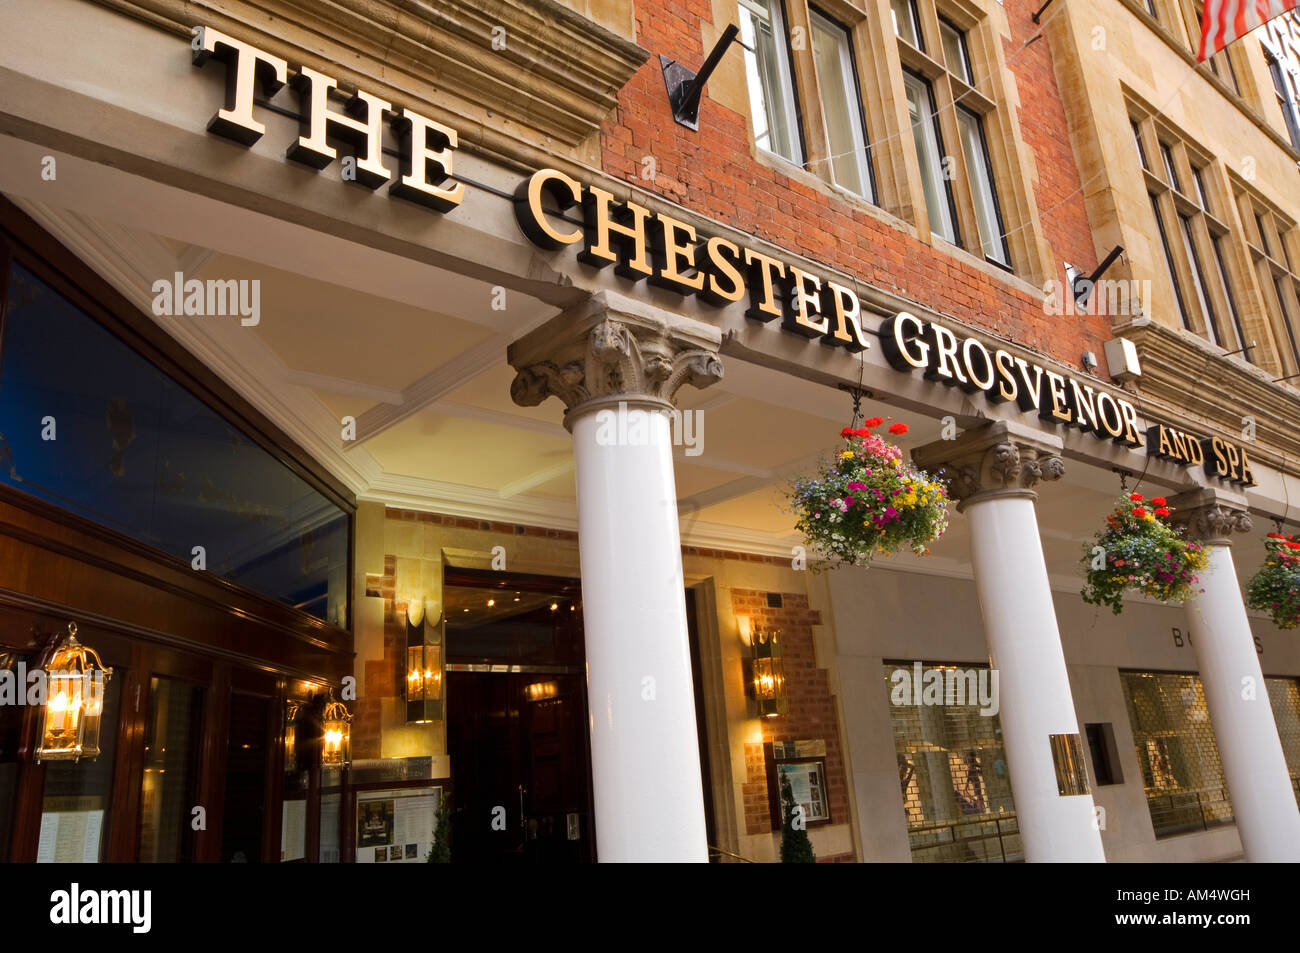 De près de l'entrée de la Chester Grosvenor And Spa Hotel, centre-ville de Chester, Cheshire, Angleterre, RU Banque D'Images